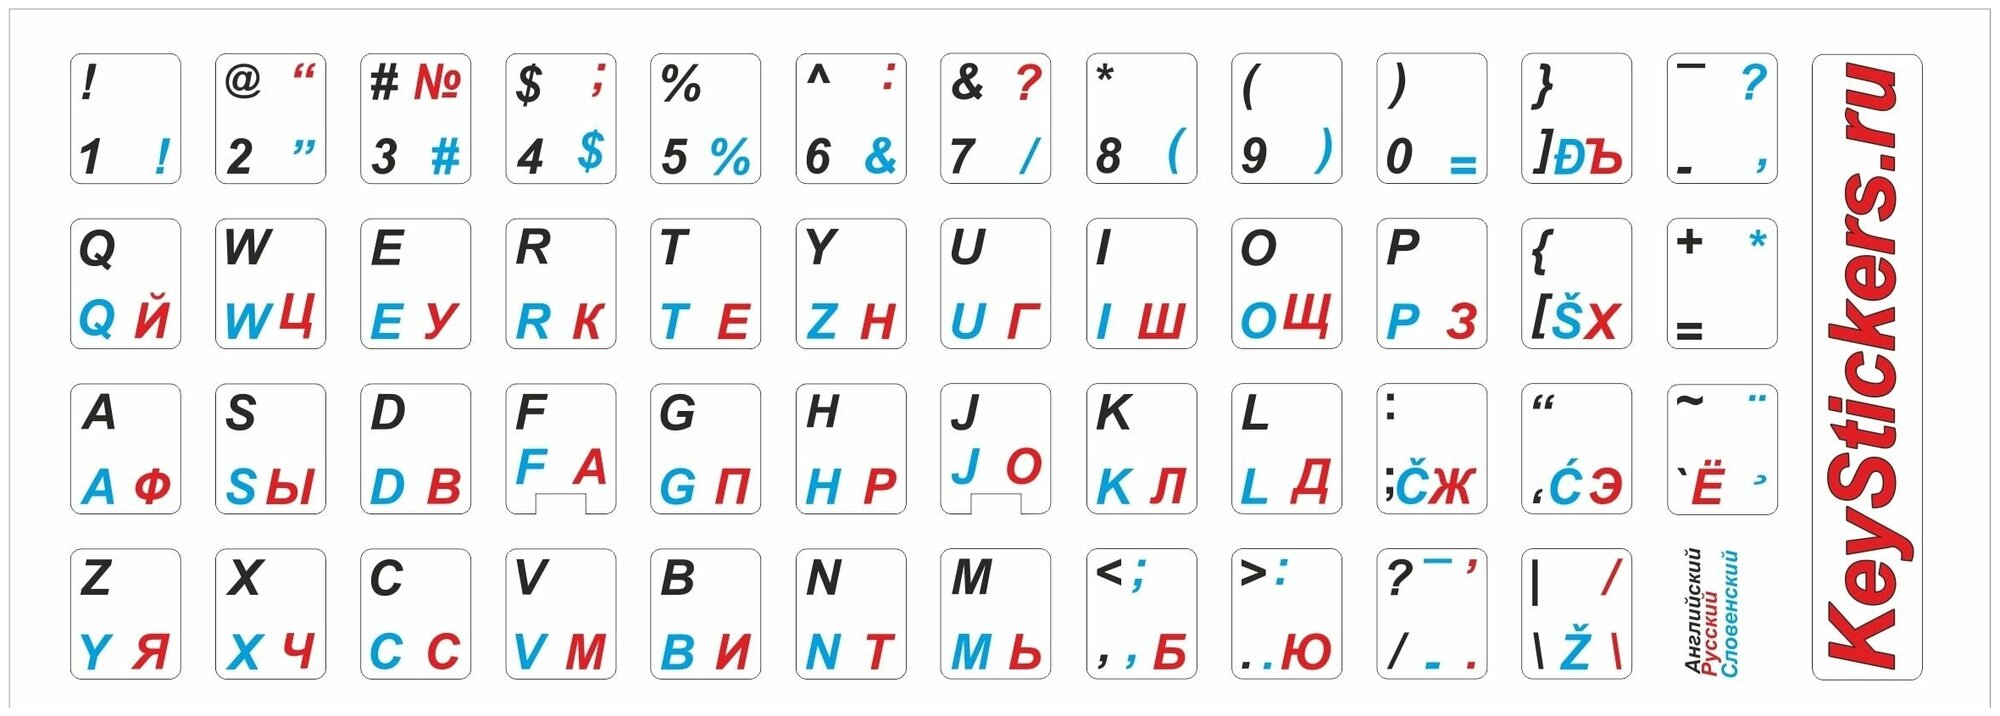 Словенские, английские, русские буквы на клавиатуру, наклейки букв 11x13 мм.